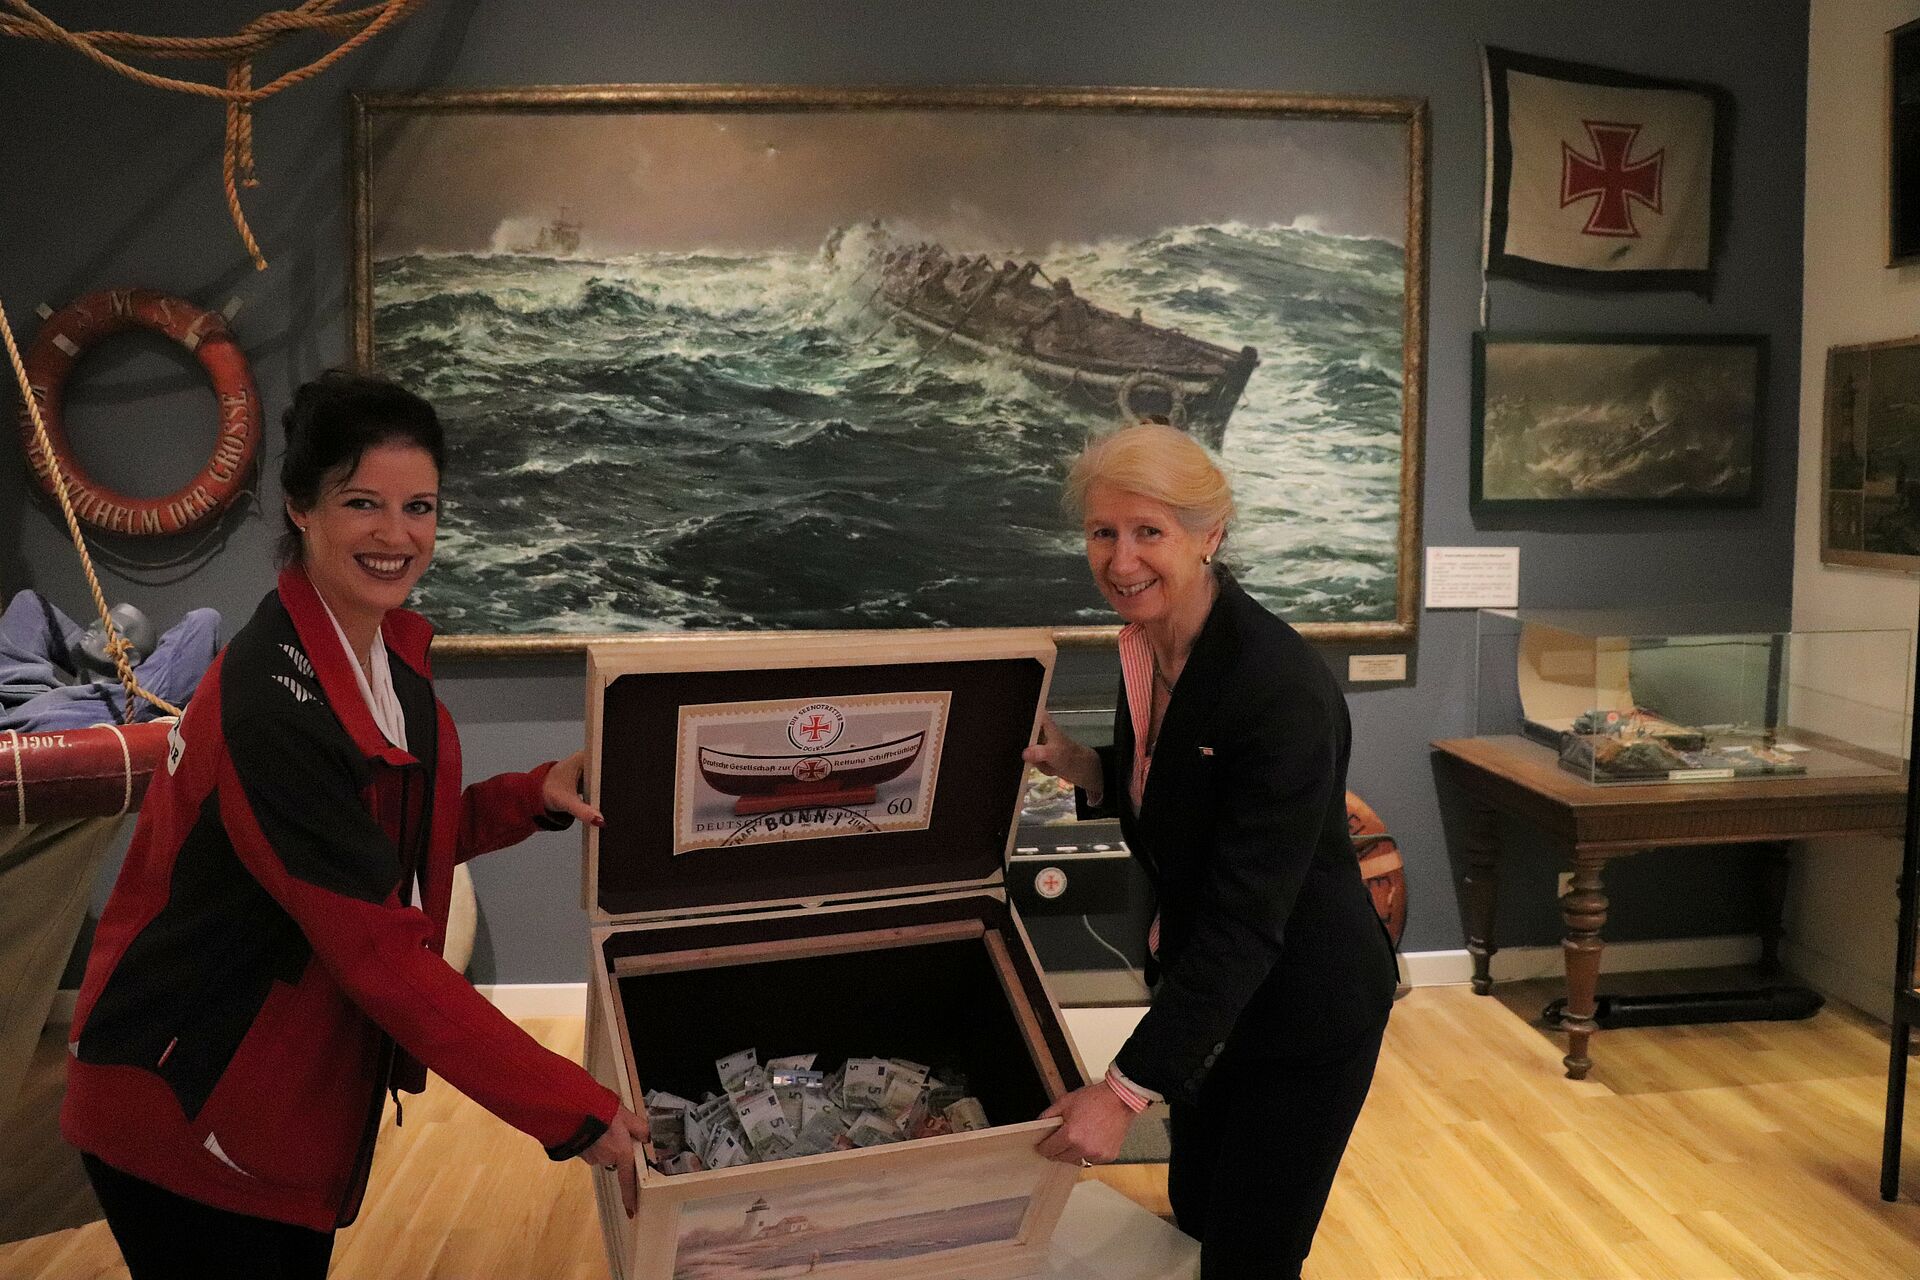 DGzRS-Mitarbeiterin Manuela Diestelhorst (l.) und Astrid Cohrs-Dreessen, Förderkreisvorsitzende des Schiffahrtsmuseums Nordfriesland, präsentieren in den Räumen der DGzRS-Ausstellung die zwischen ihnen stehende große Seemannskiste, die mit einer Spende an die Seenotretter gefüllt ist.